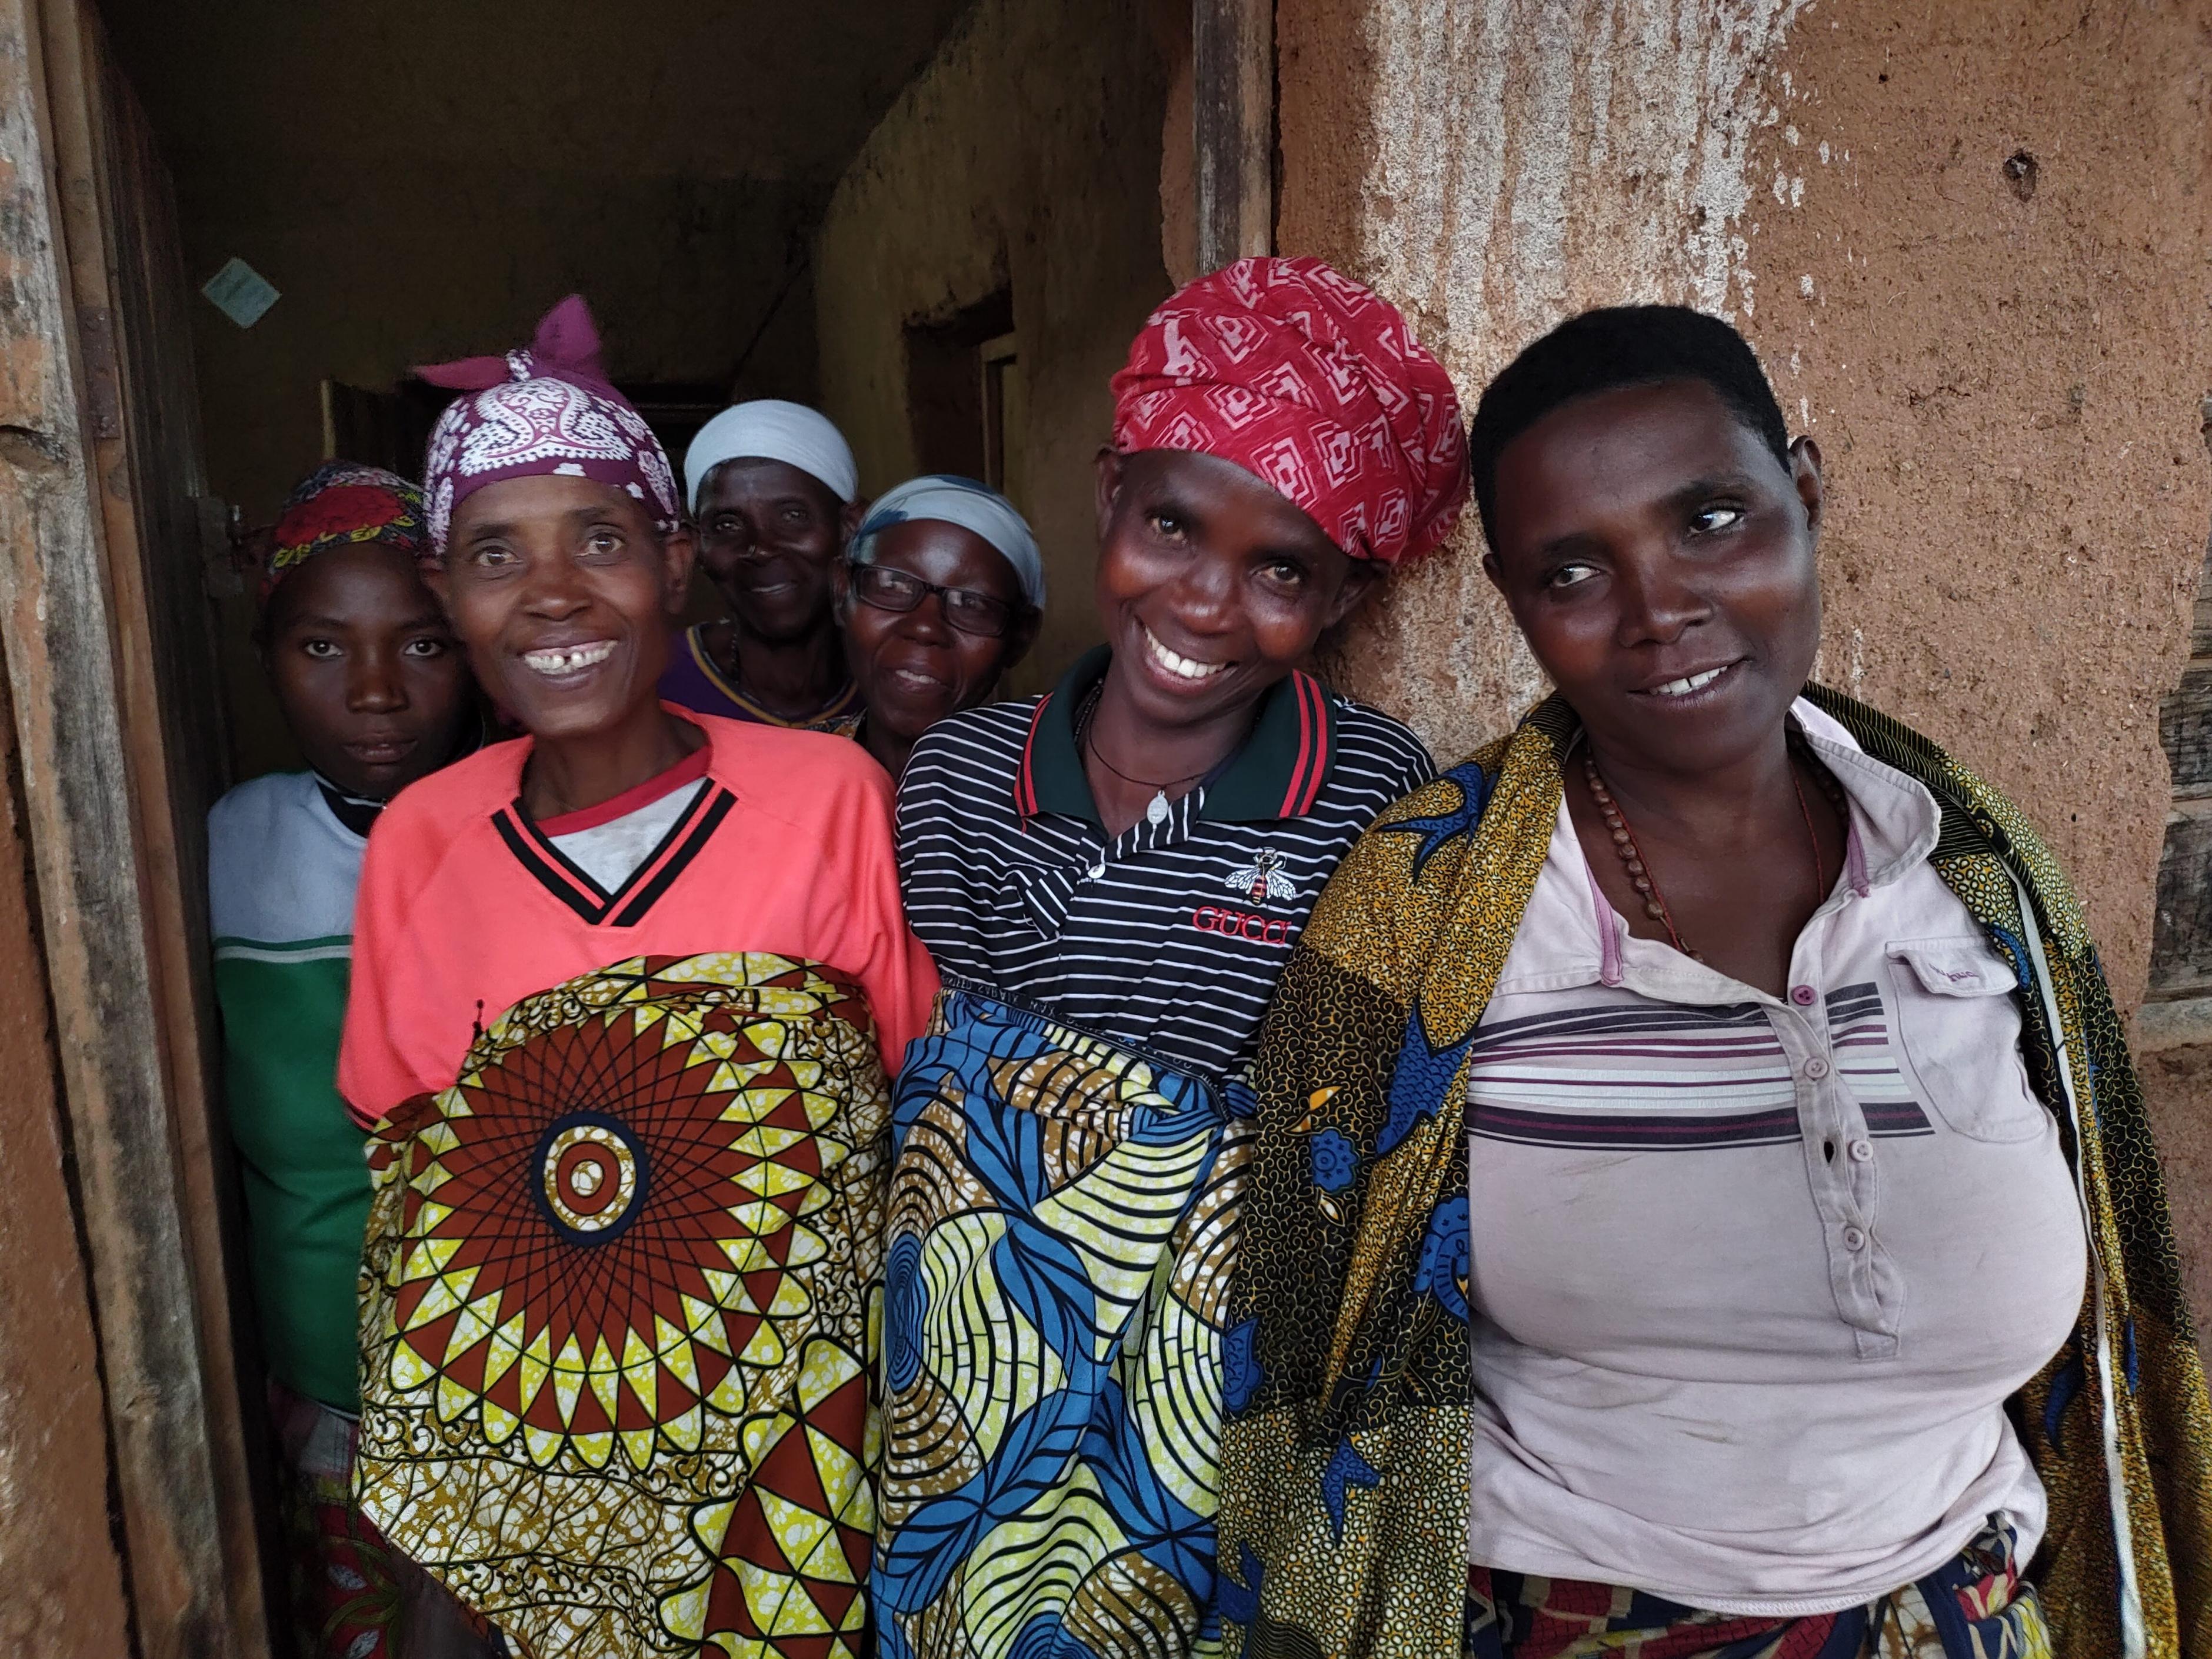 Sechs Frauen der Solidargruppe Bushigikirane. Die Frauen sparen gemeinsam, geben einander Kredite und machen gemeinsame Investitionen. Seit 2018 betreiben sie gemeinsam ein Restaurant. Dabei werden sie von unserer Partnerorganisation ADISCO unterstützt.